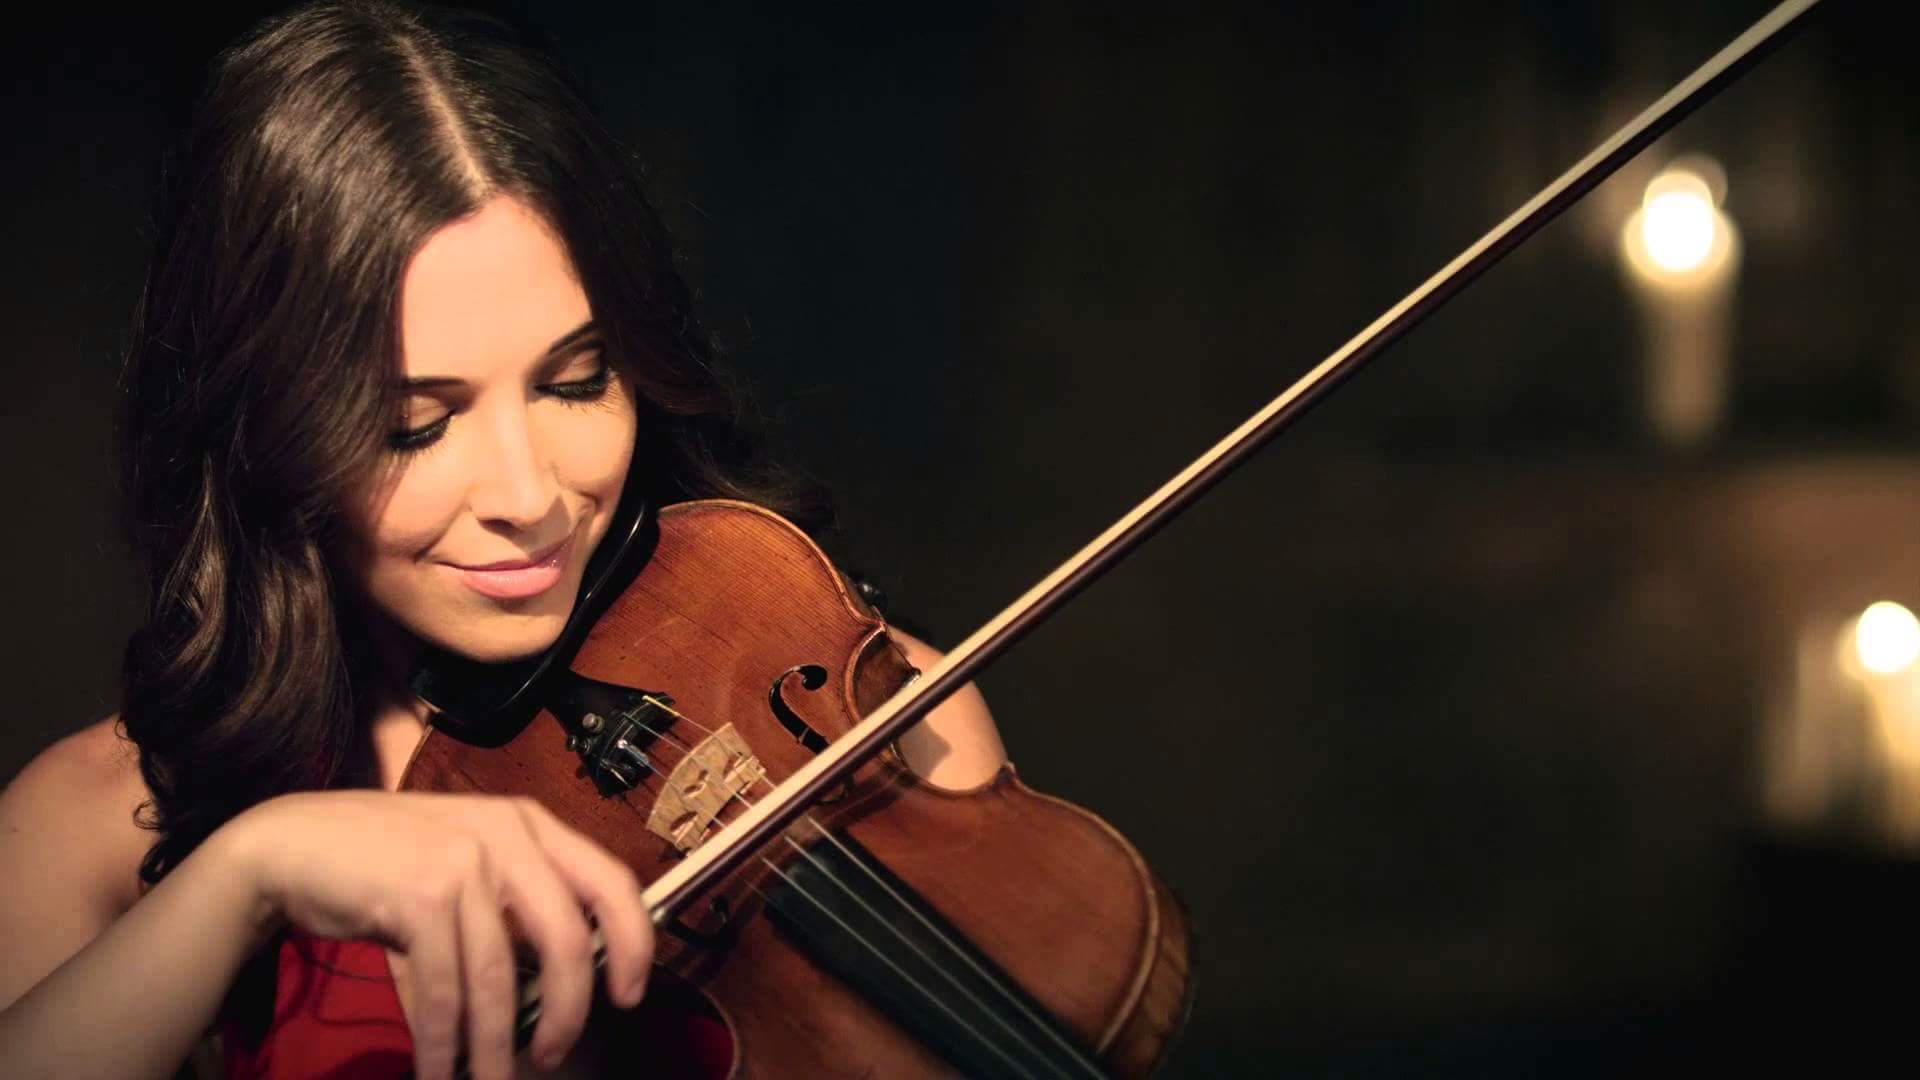 La Principessa, il Violino e il Sogno nel cassetto. Cecilia Crisafulli la violinista della Max Raabe & Palast Orchester.